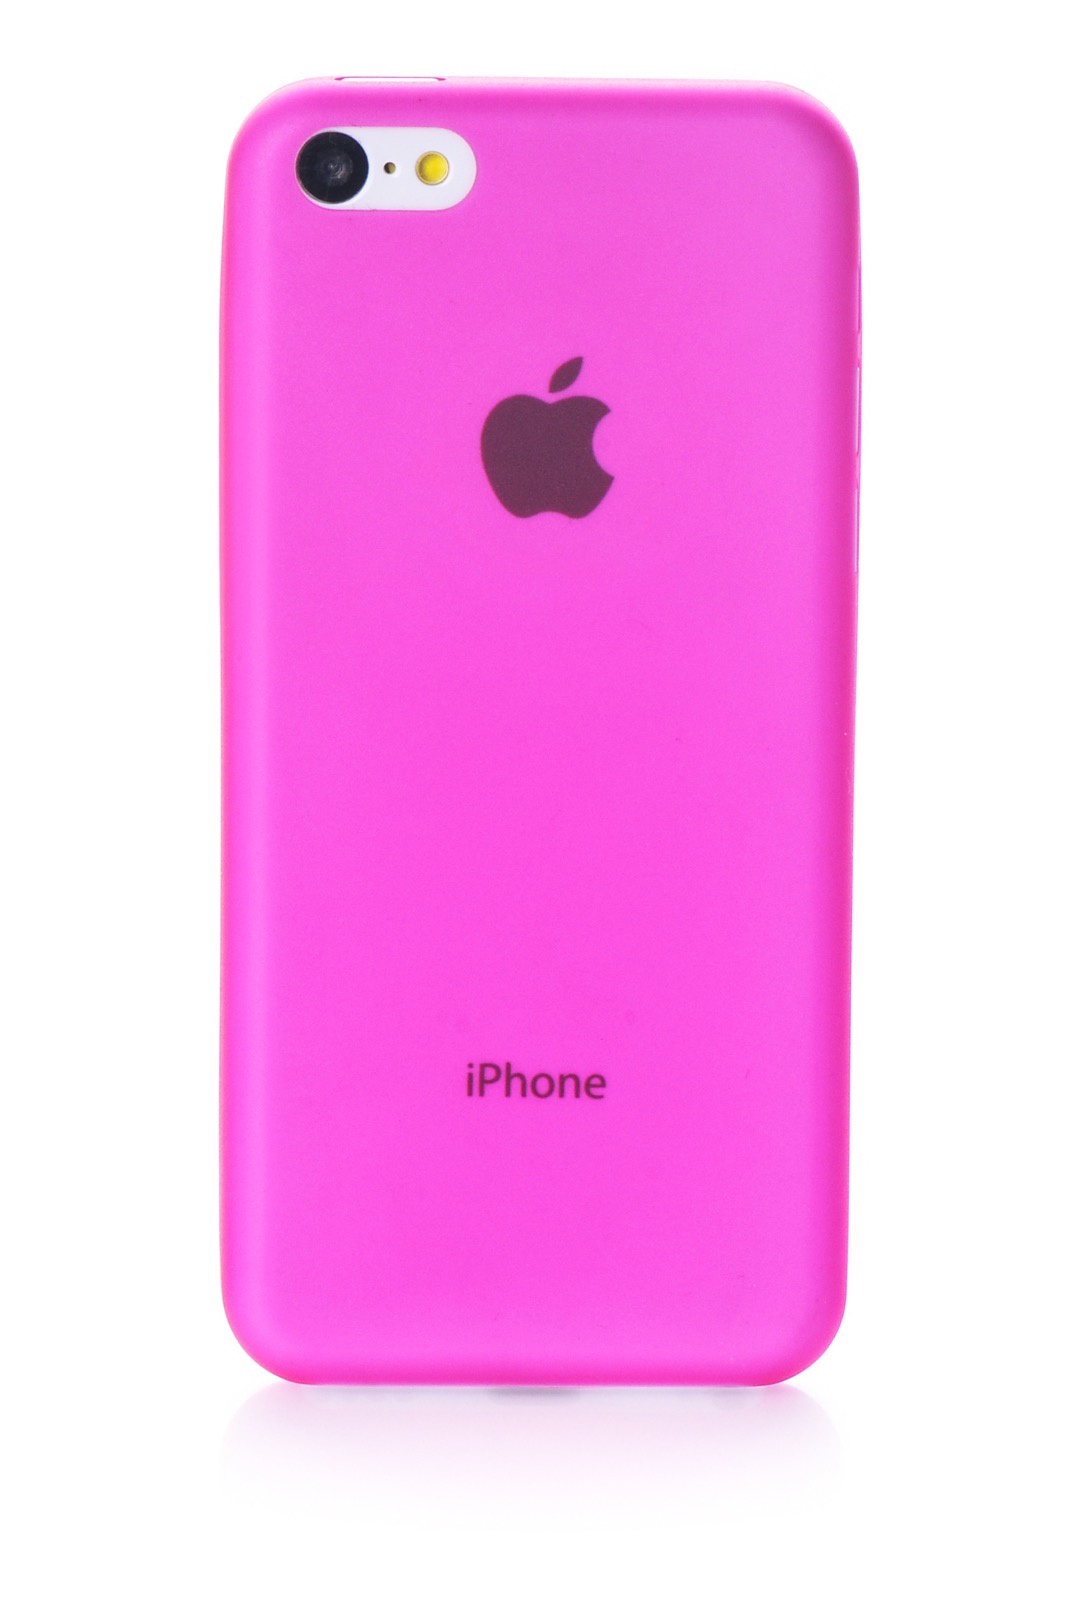 Телефон айфон розовый. Apple iphone 5c 2013 Pink. Apple iphone 5 розовый. Розовый айфон. Чехол.